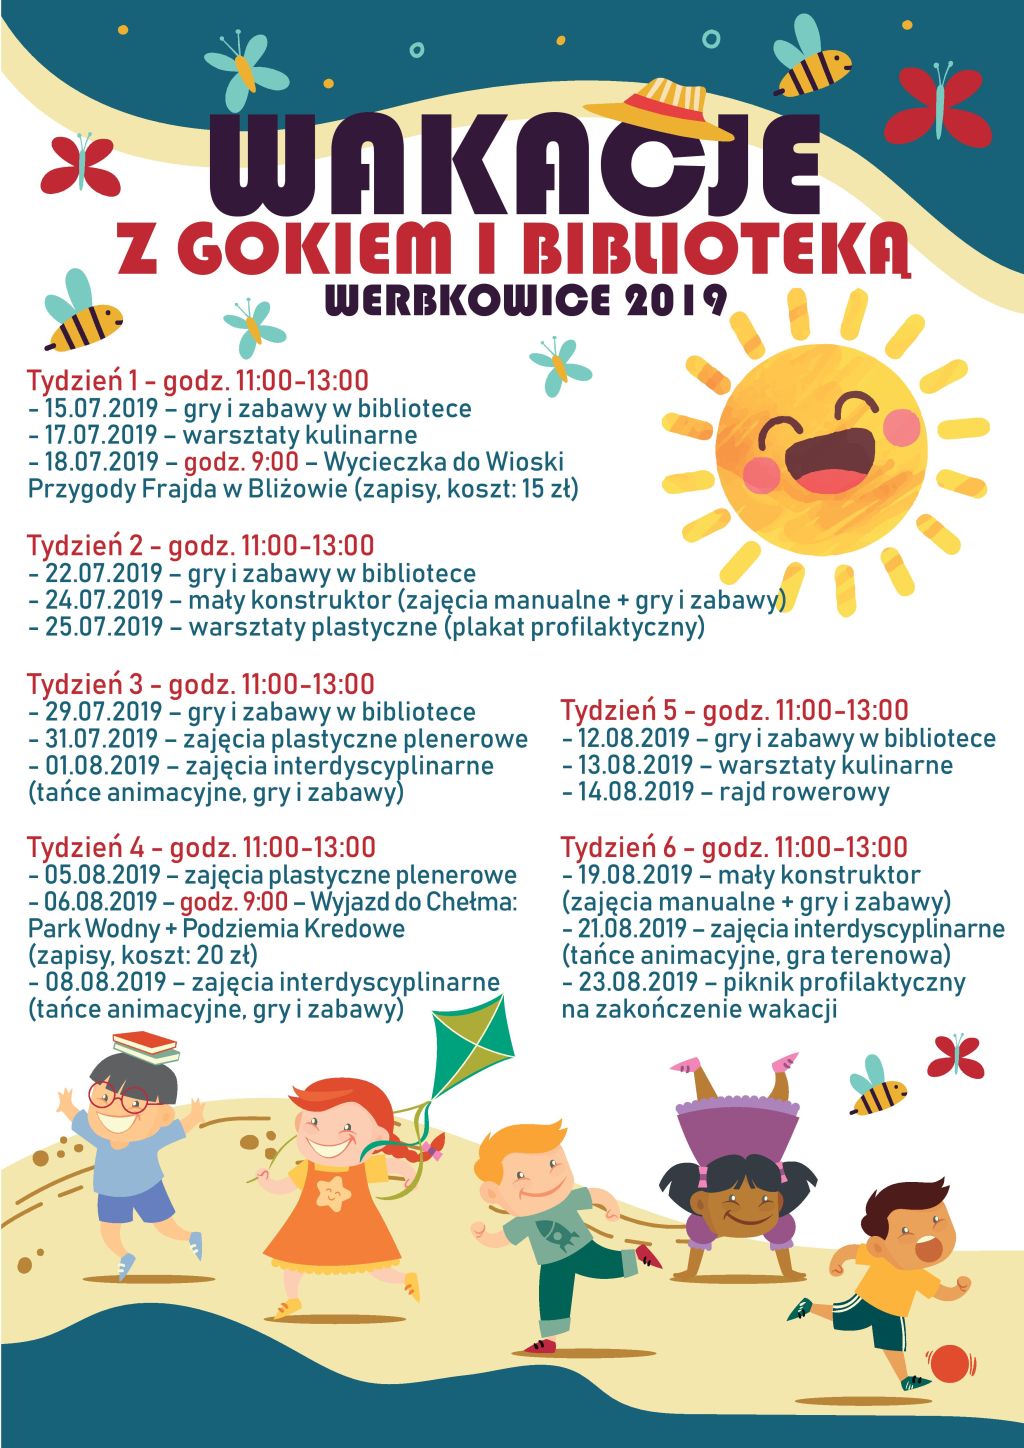 Plakat "Wakacje z GOKiem i Biblioteką"